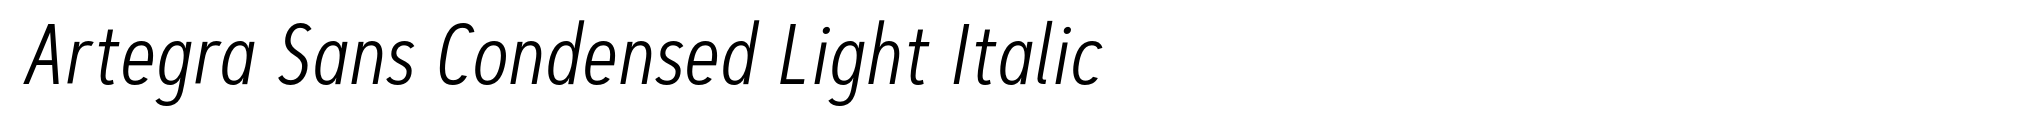 Artegra Sans Condensed Light Italic image